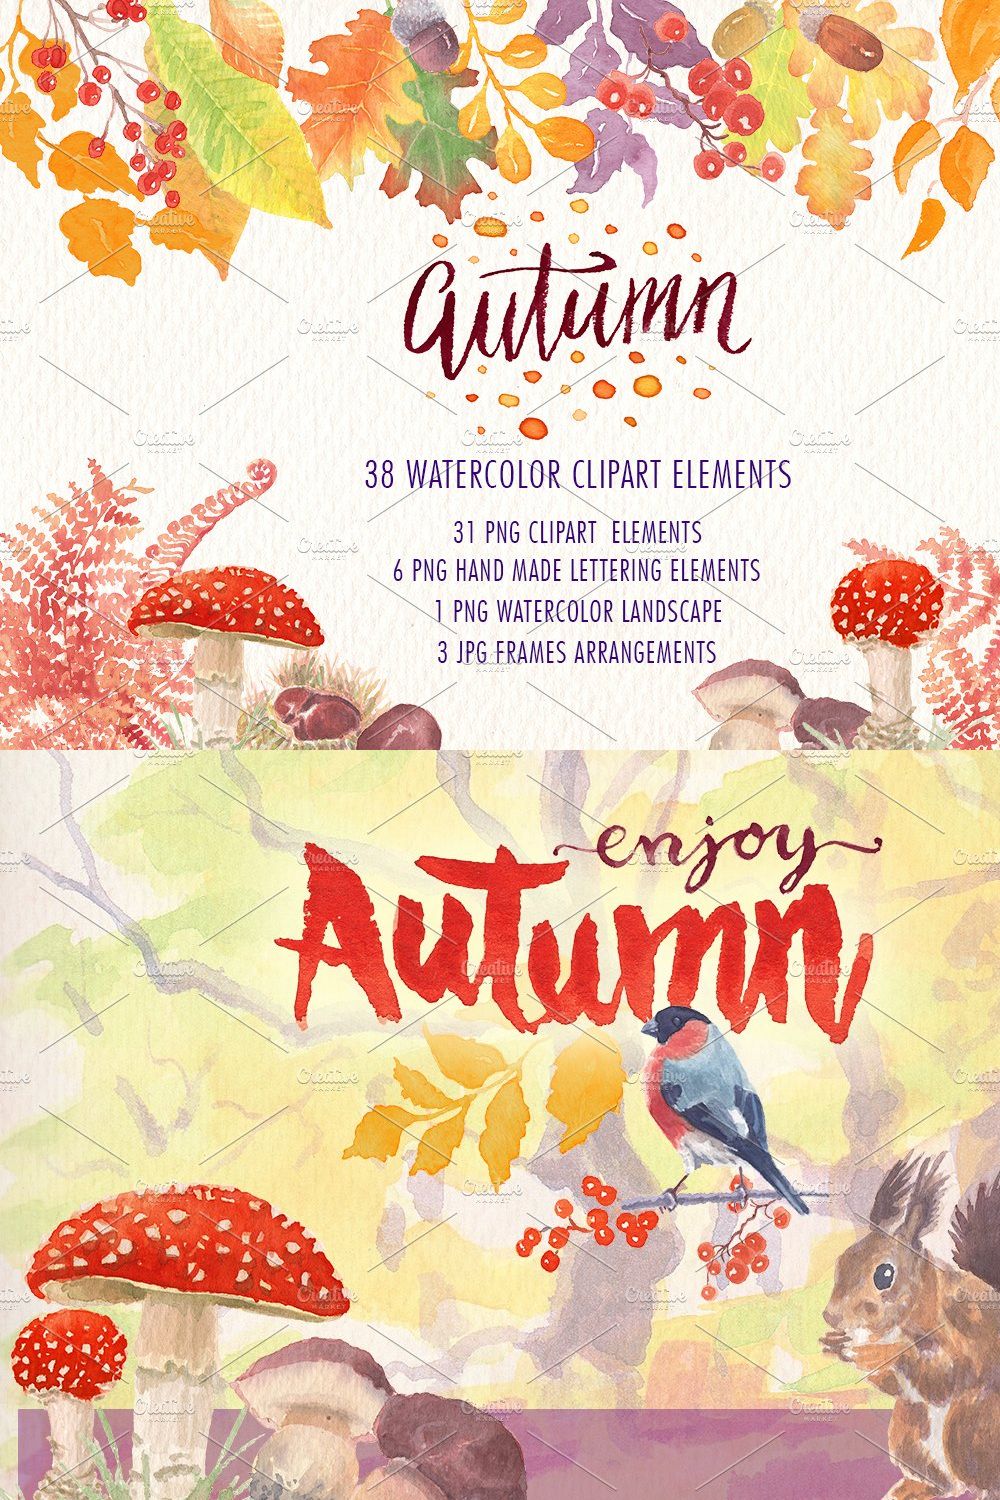 Autumn watercolor clipart set pinterest preview image.